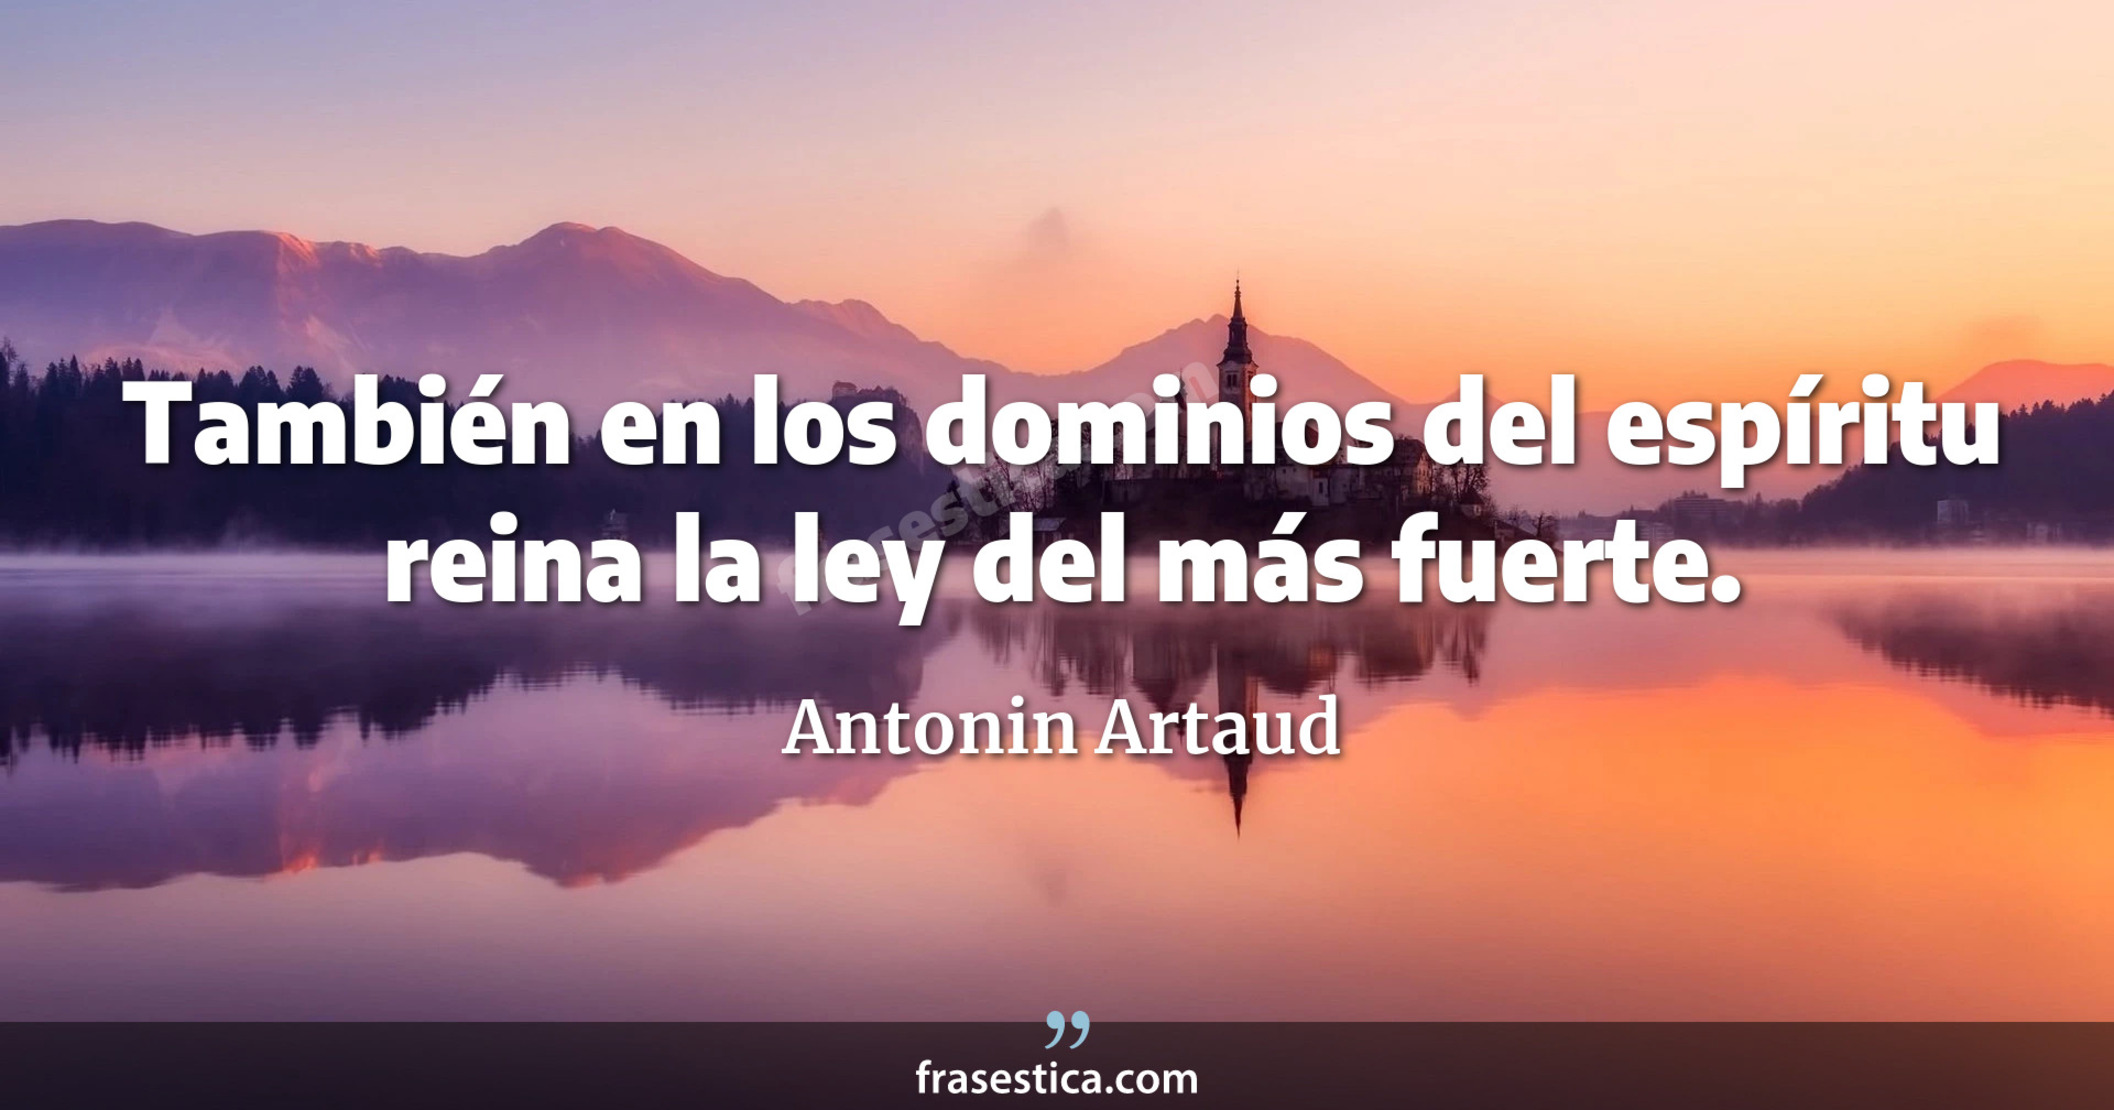 También en los dominios del espíritu reina la ley del más fuerte. - Antonin Artaud